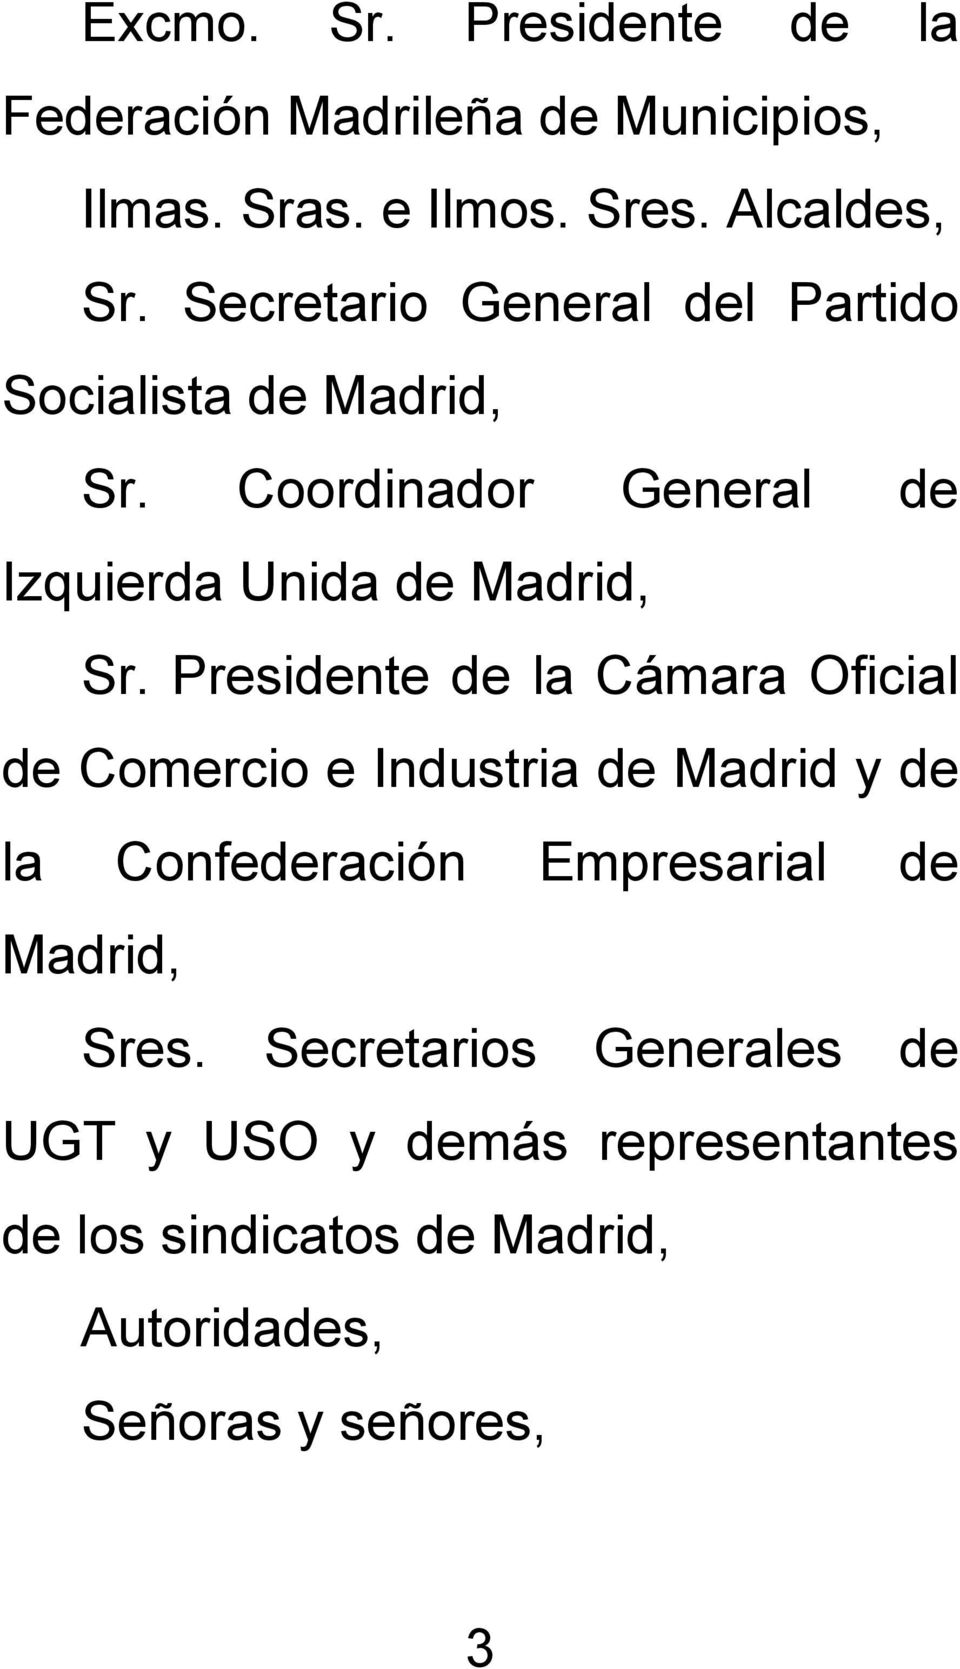 Presidente de la Cámara Oficial de Comercio e Industria de Madrid y de la Confederación Empresarial de Madrid,